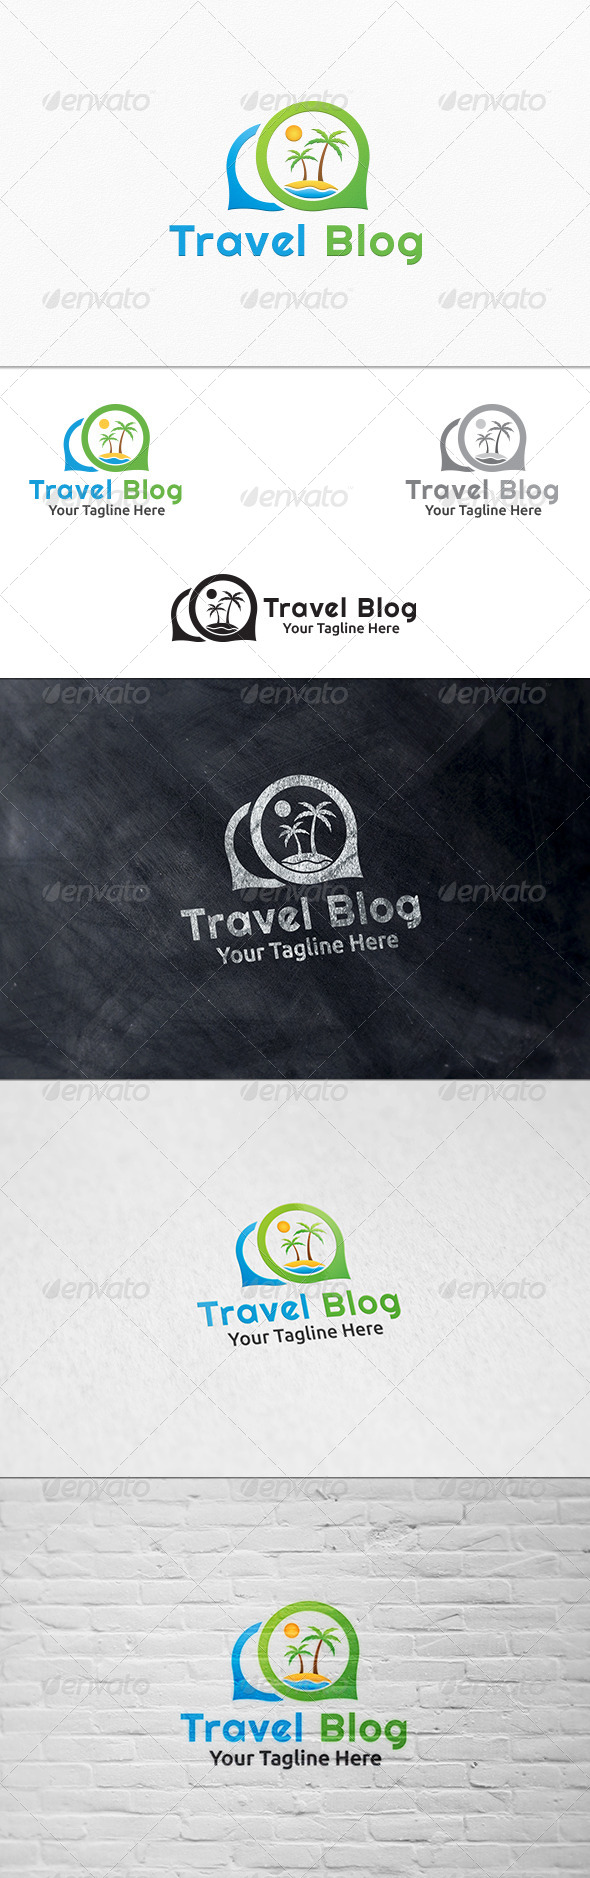 GraphicRiver Travel Blog Logo Template 7696310